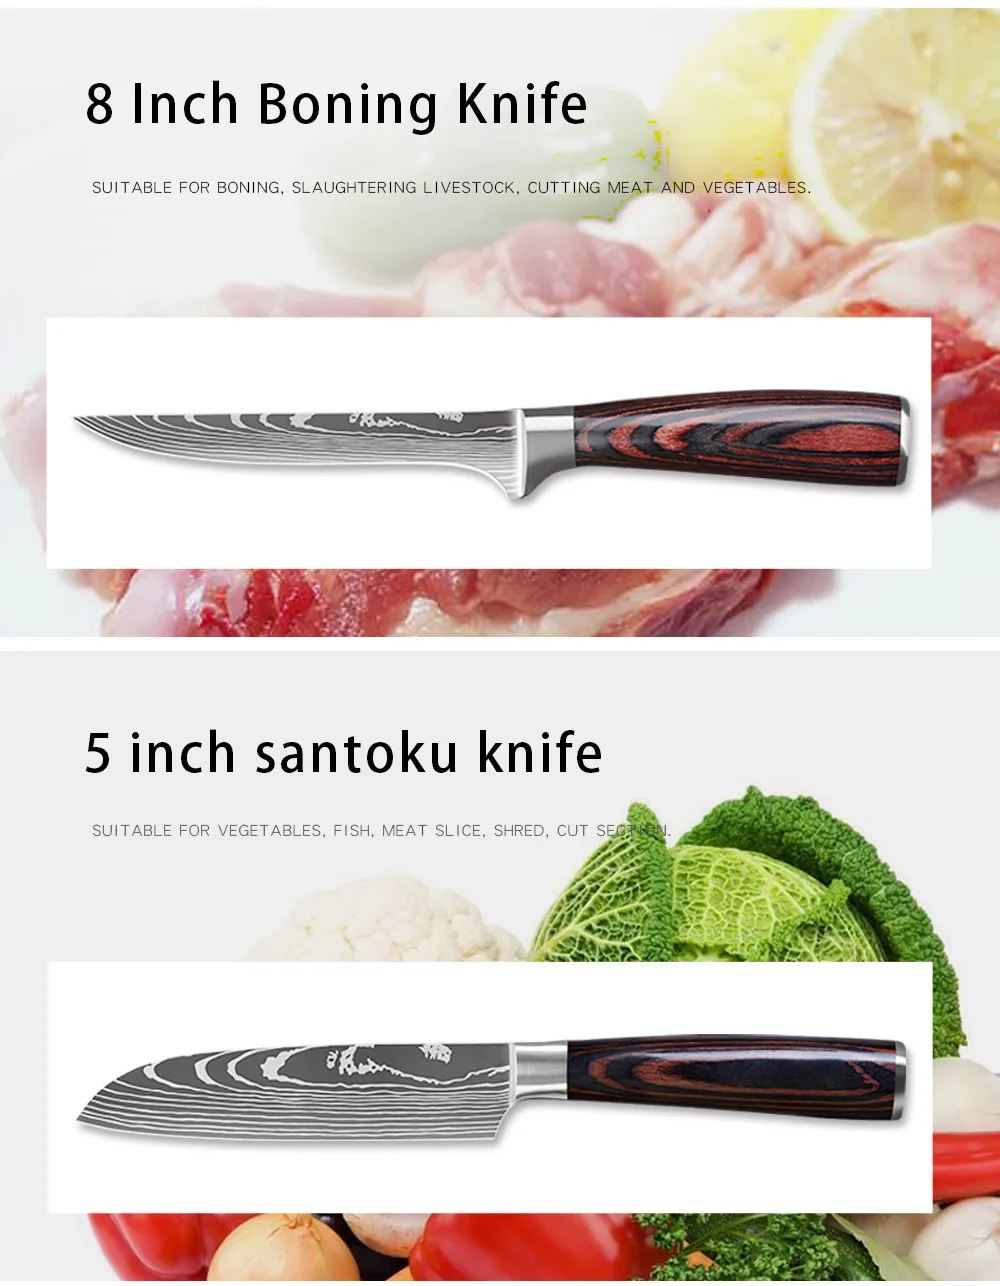 Best knife set under $200